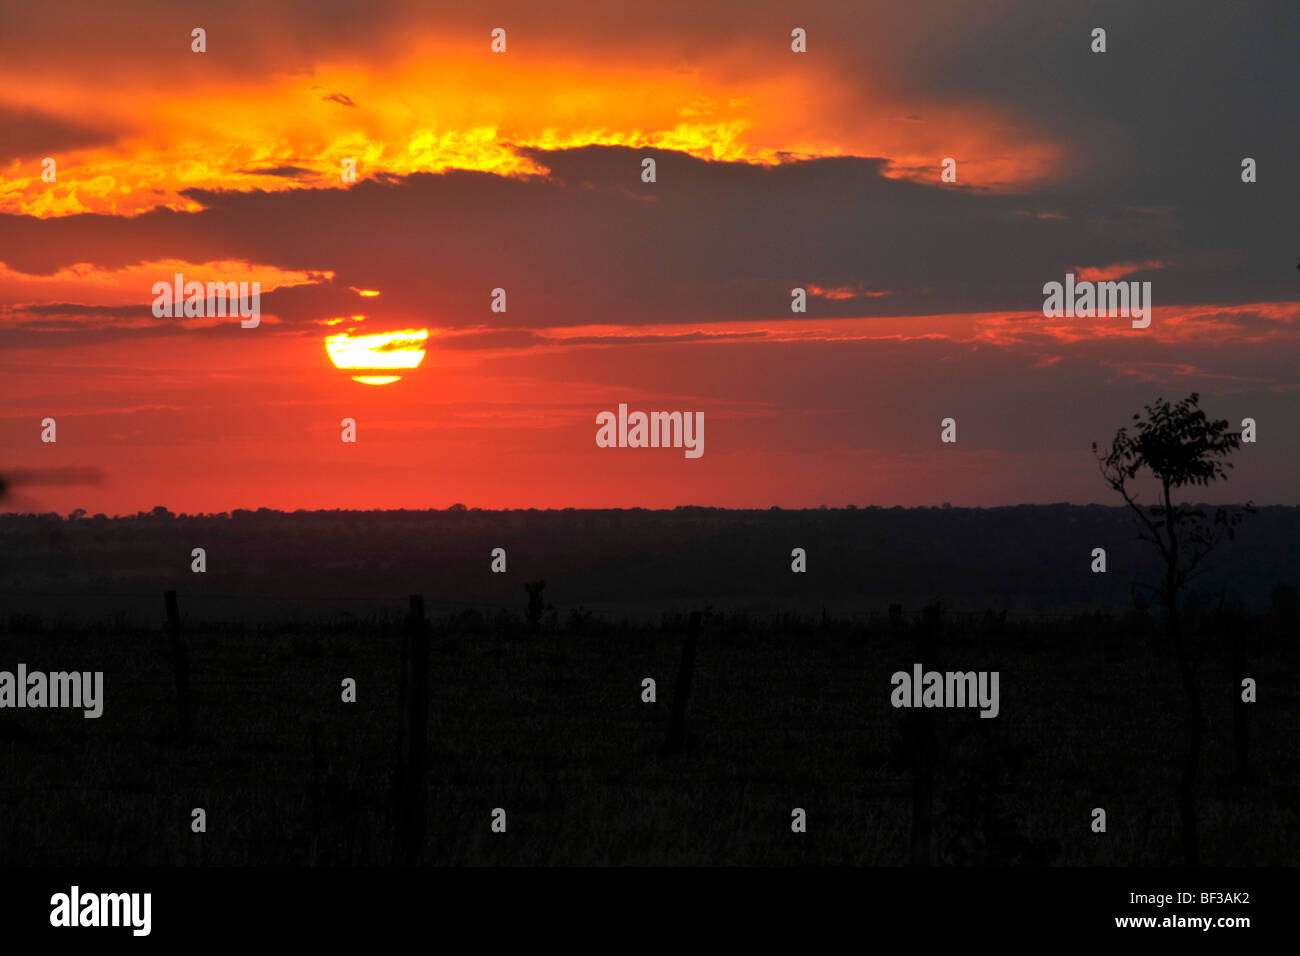 Sunset near farmlands, Mato Grosso do Sul, Brazil Stock Photo